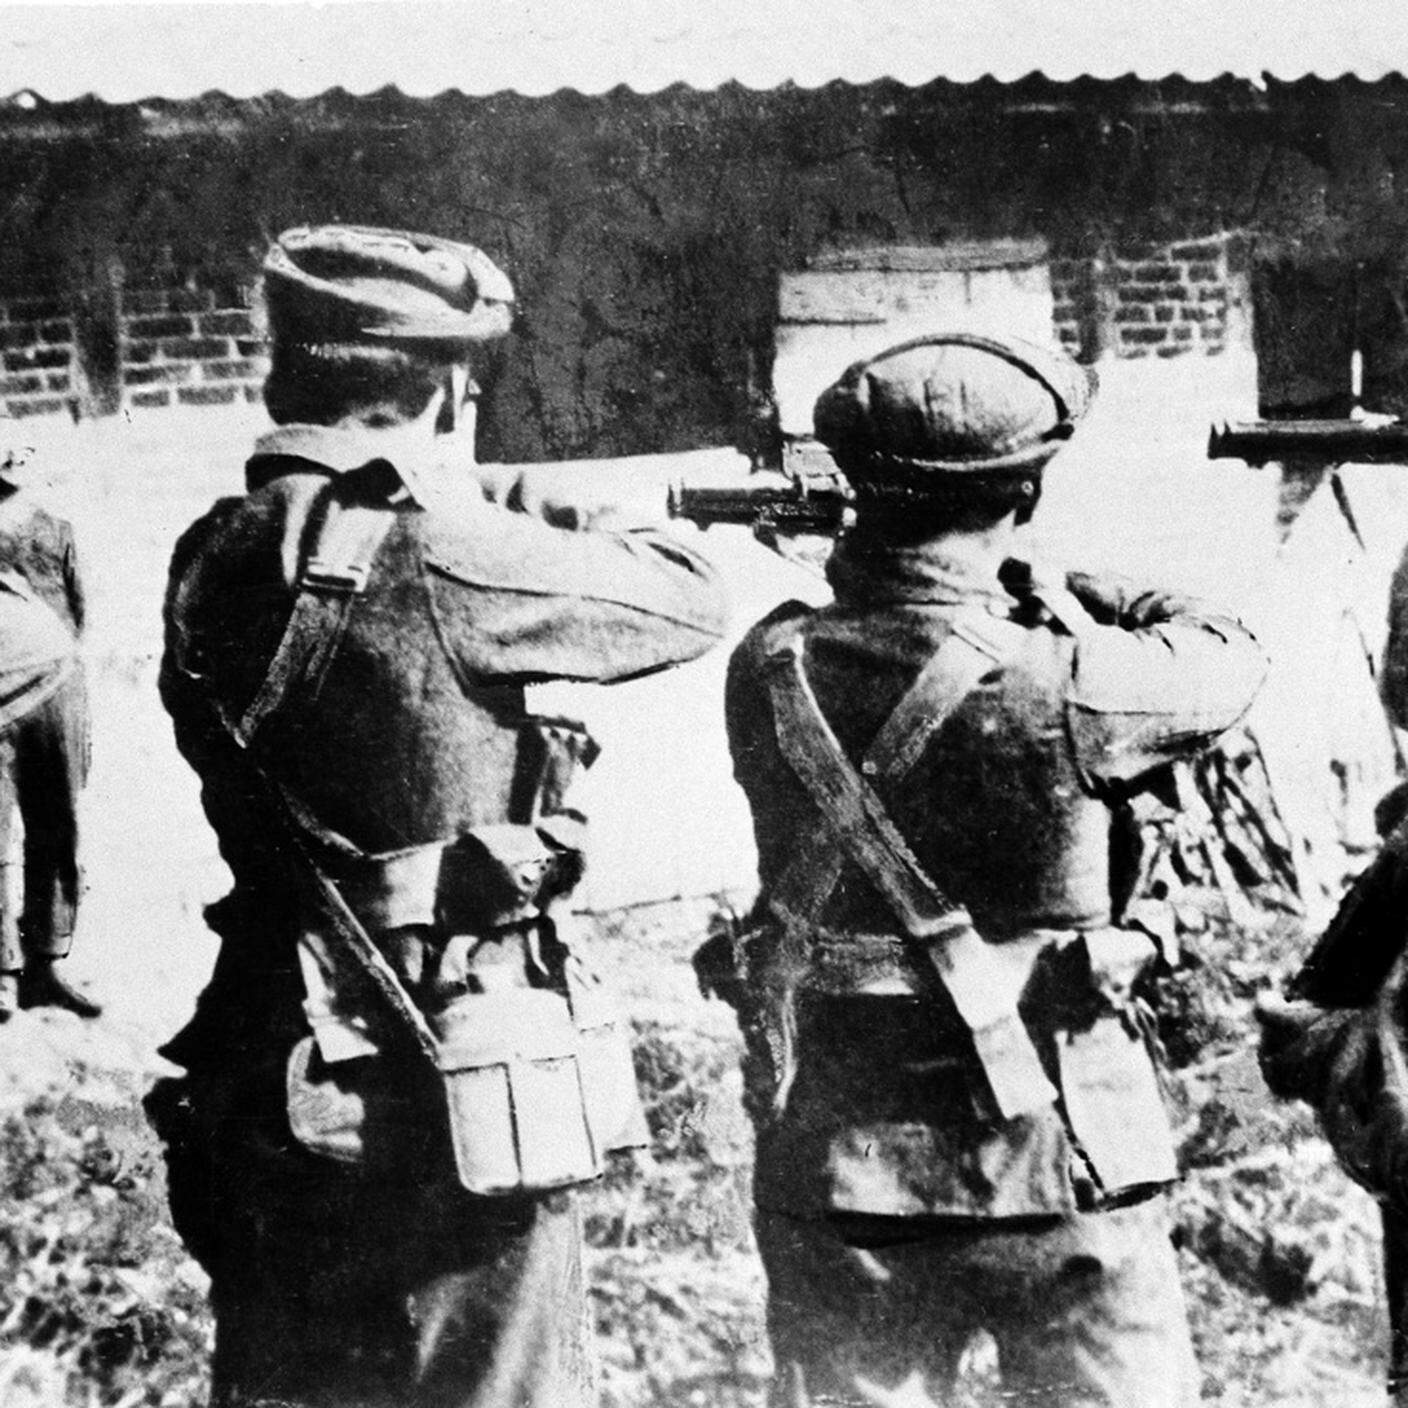 Una squadra di fuoco britannica si prepara a eseguire una spia tedesca da qualche parte in Gran Bretagna durante la Grande Guerra, data sconosciuta.